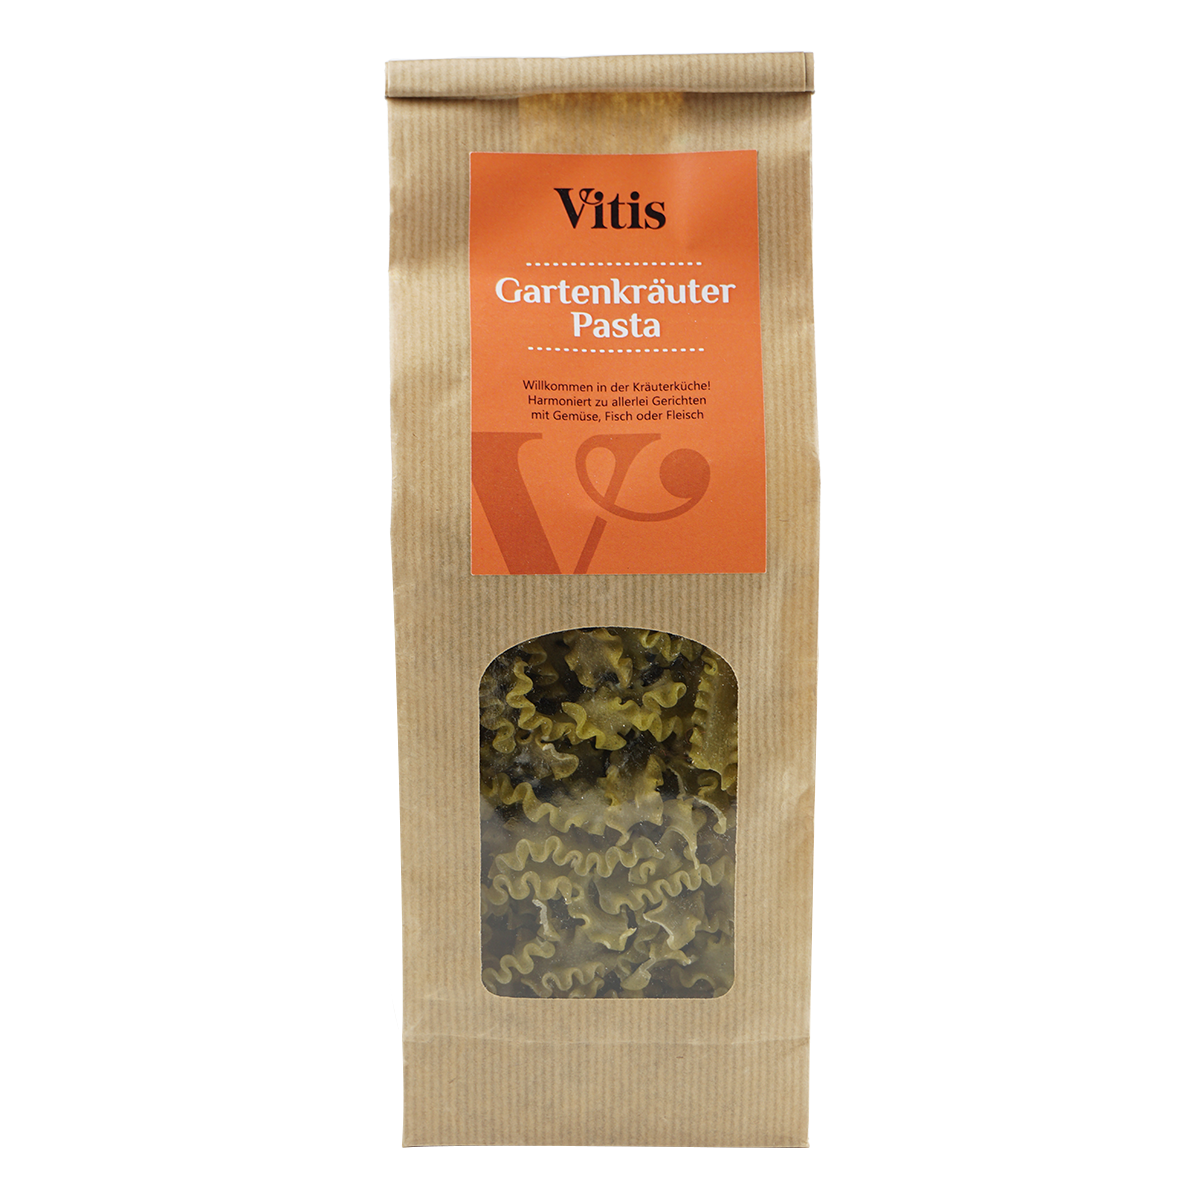 eine Packung Gartenkräuter Pasta der Firma Vitis